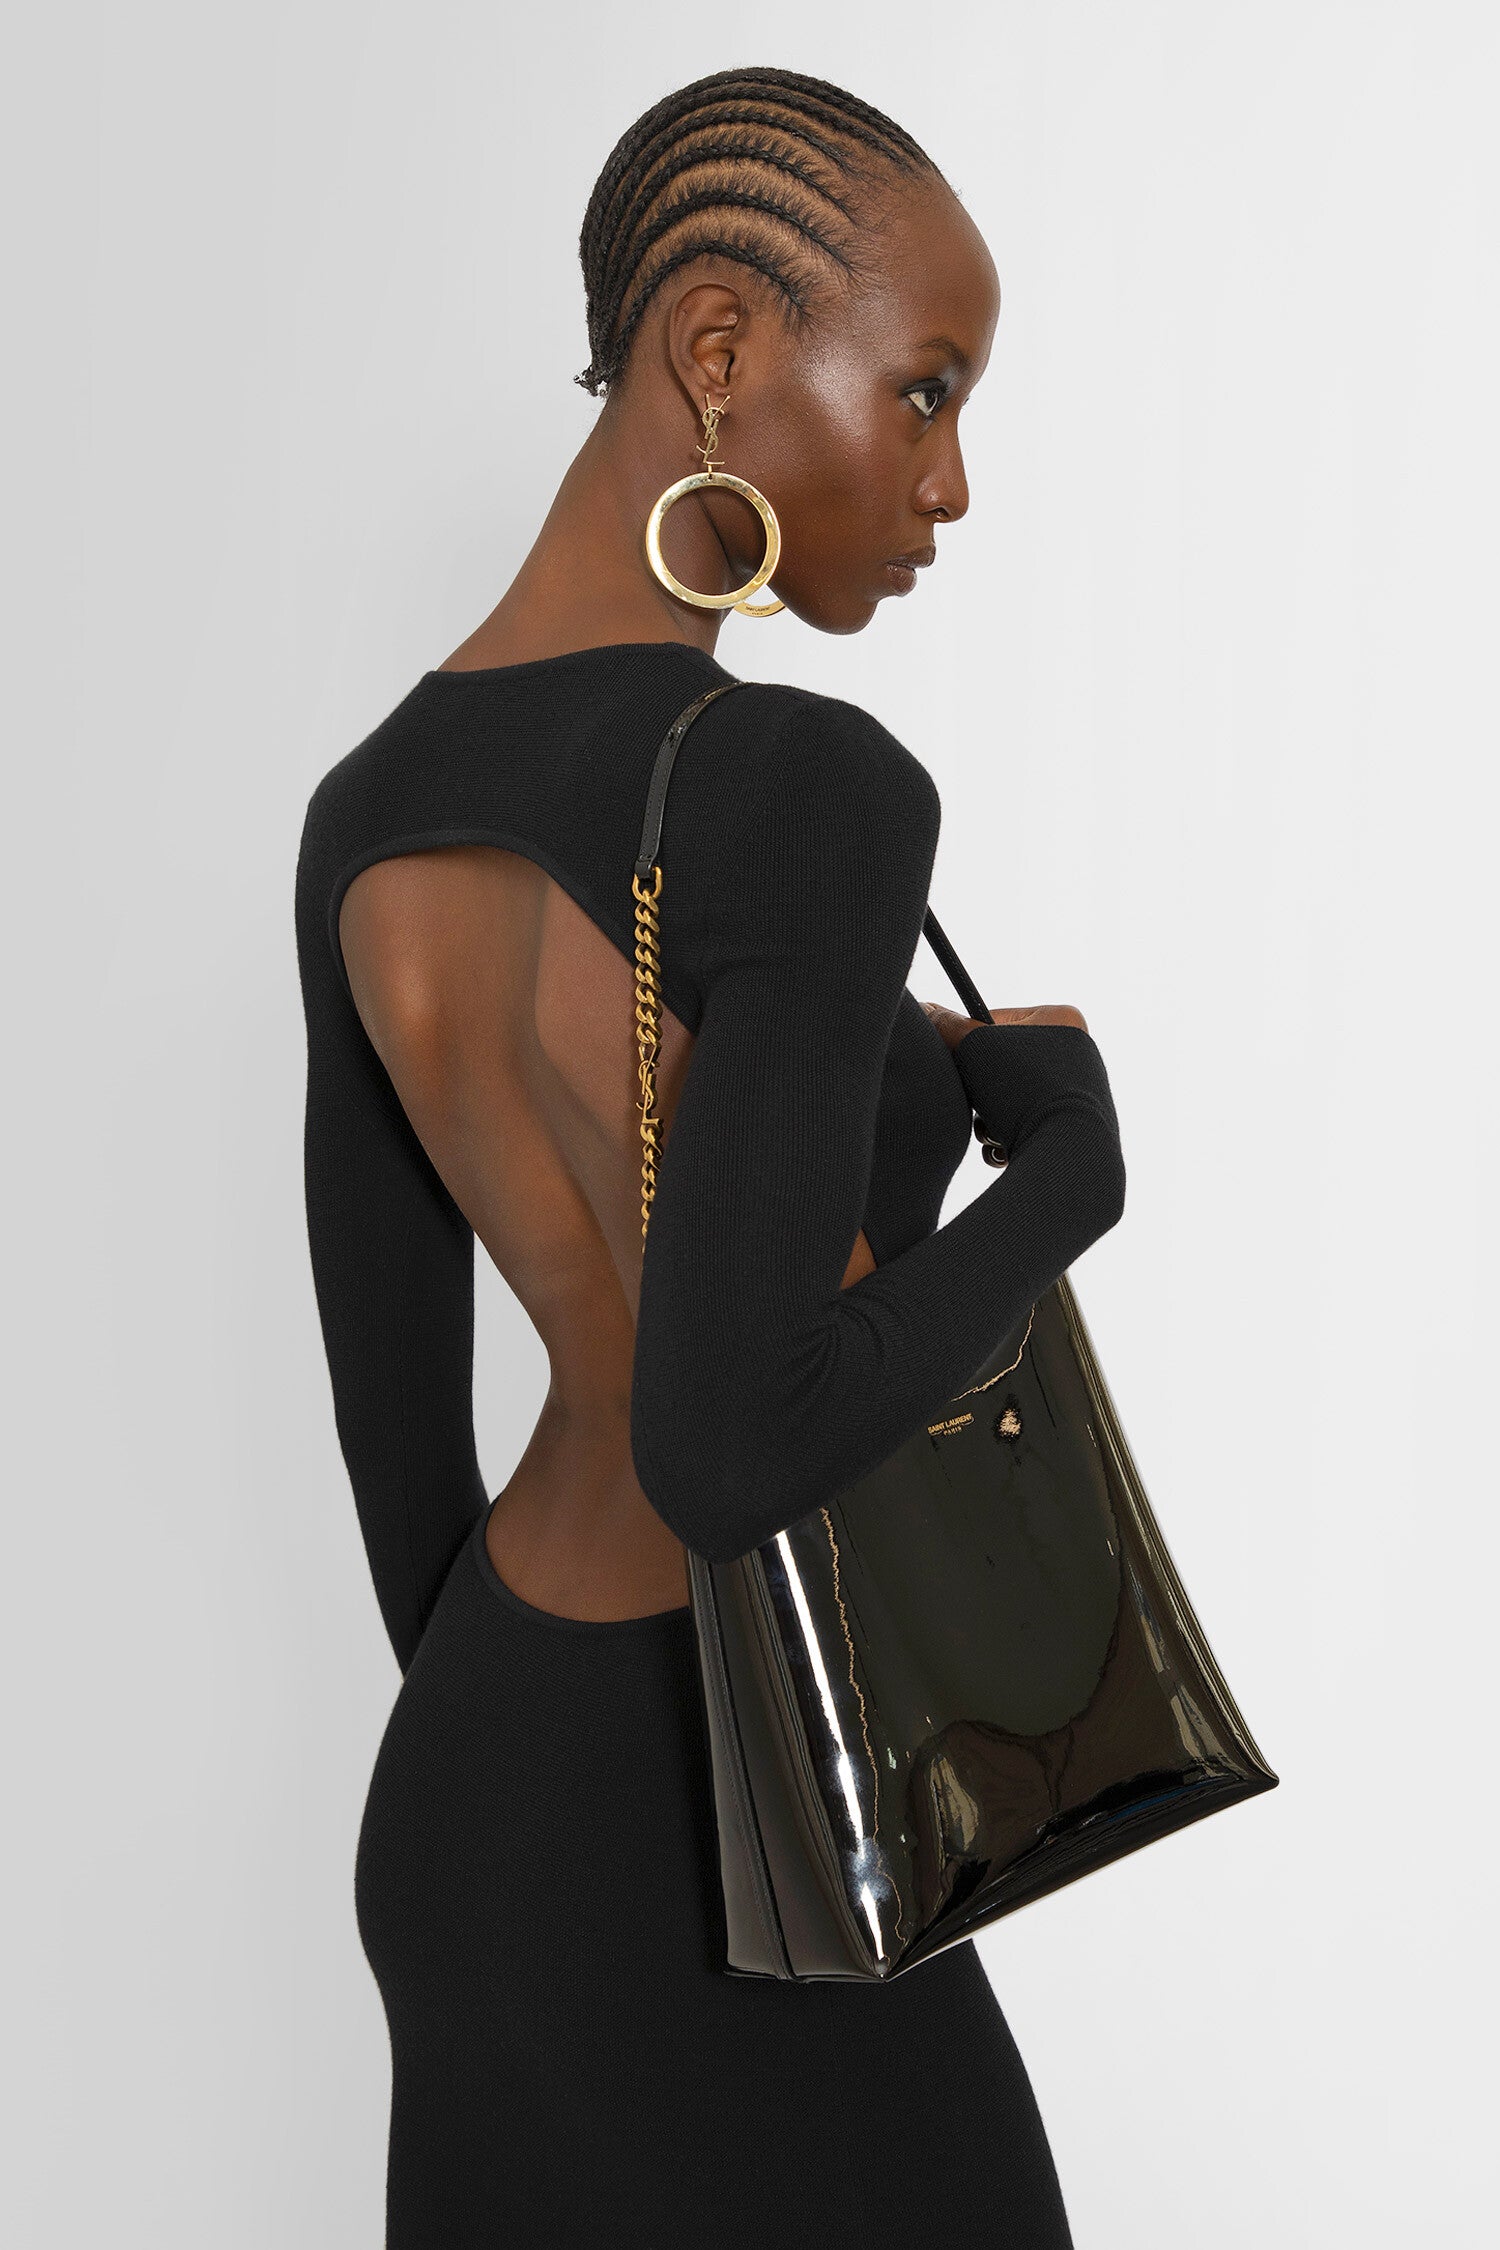 SAINT LAURENT WOMAN BLACK SHOULDER BAGS